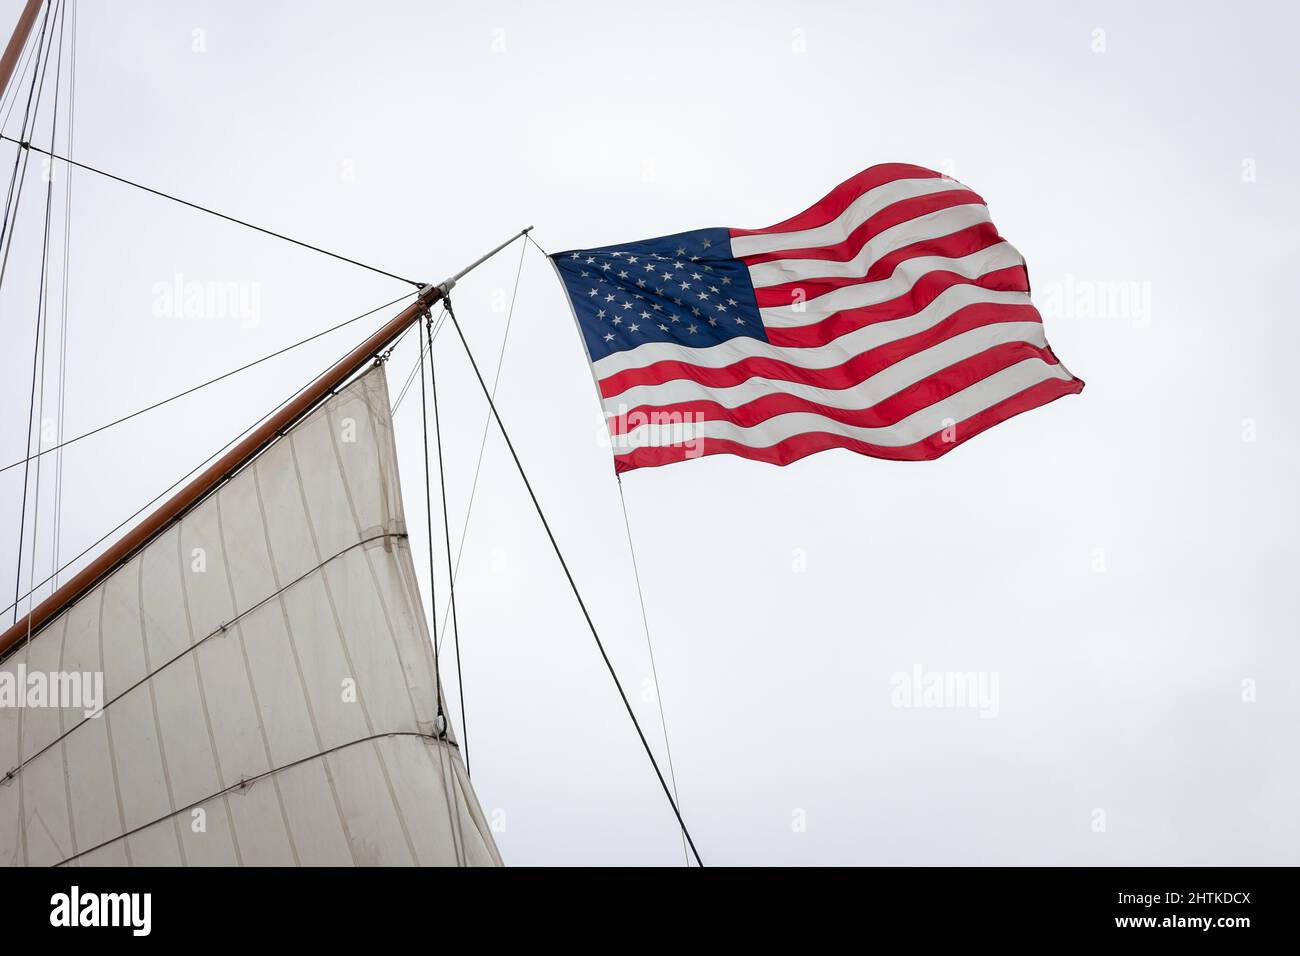 Le drapeau American Stars & Stripes vole depuis le pipar de mizzen gaff du grand navire. Banque D'Images